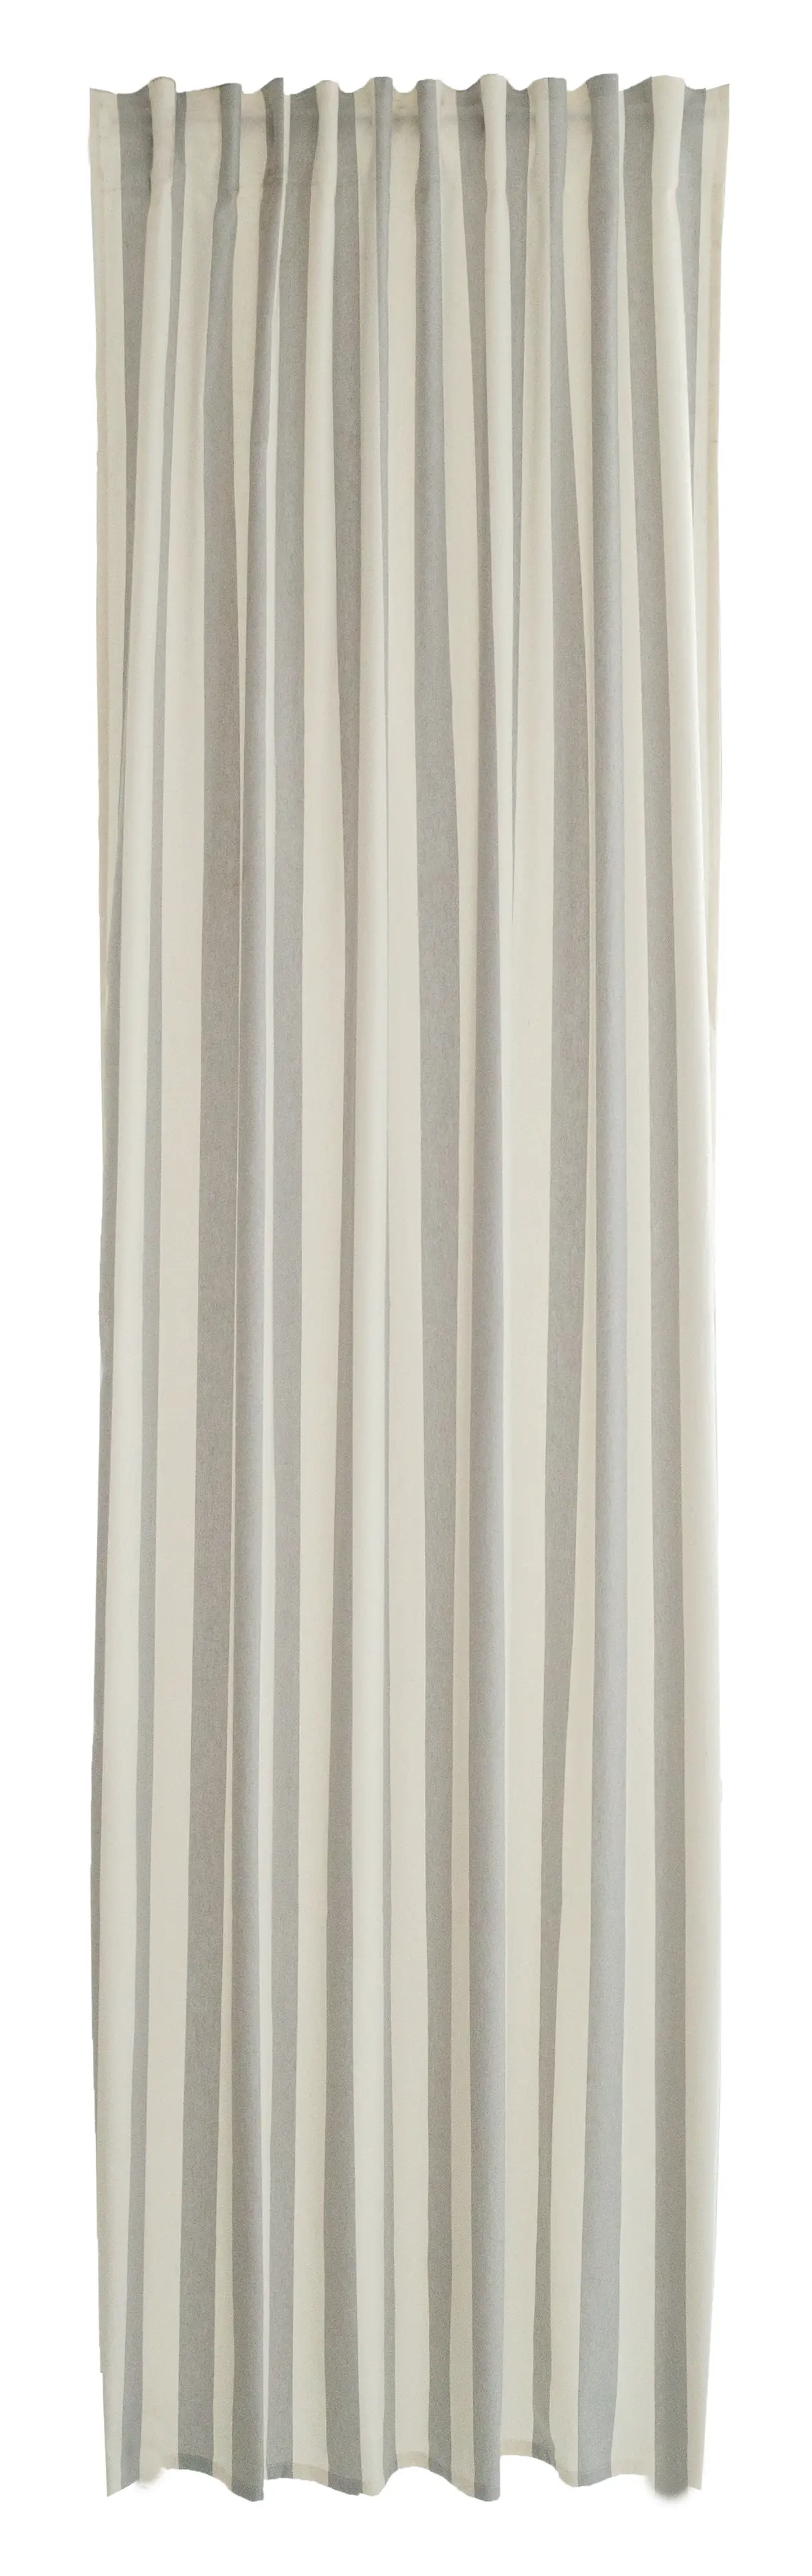 Vorhang baumwolle streifen grau-beige